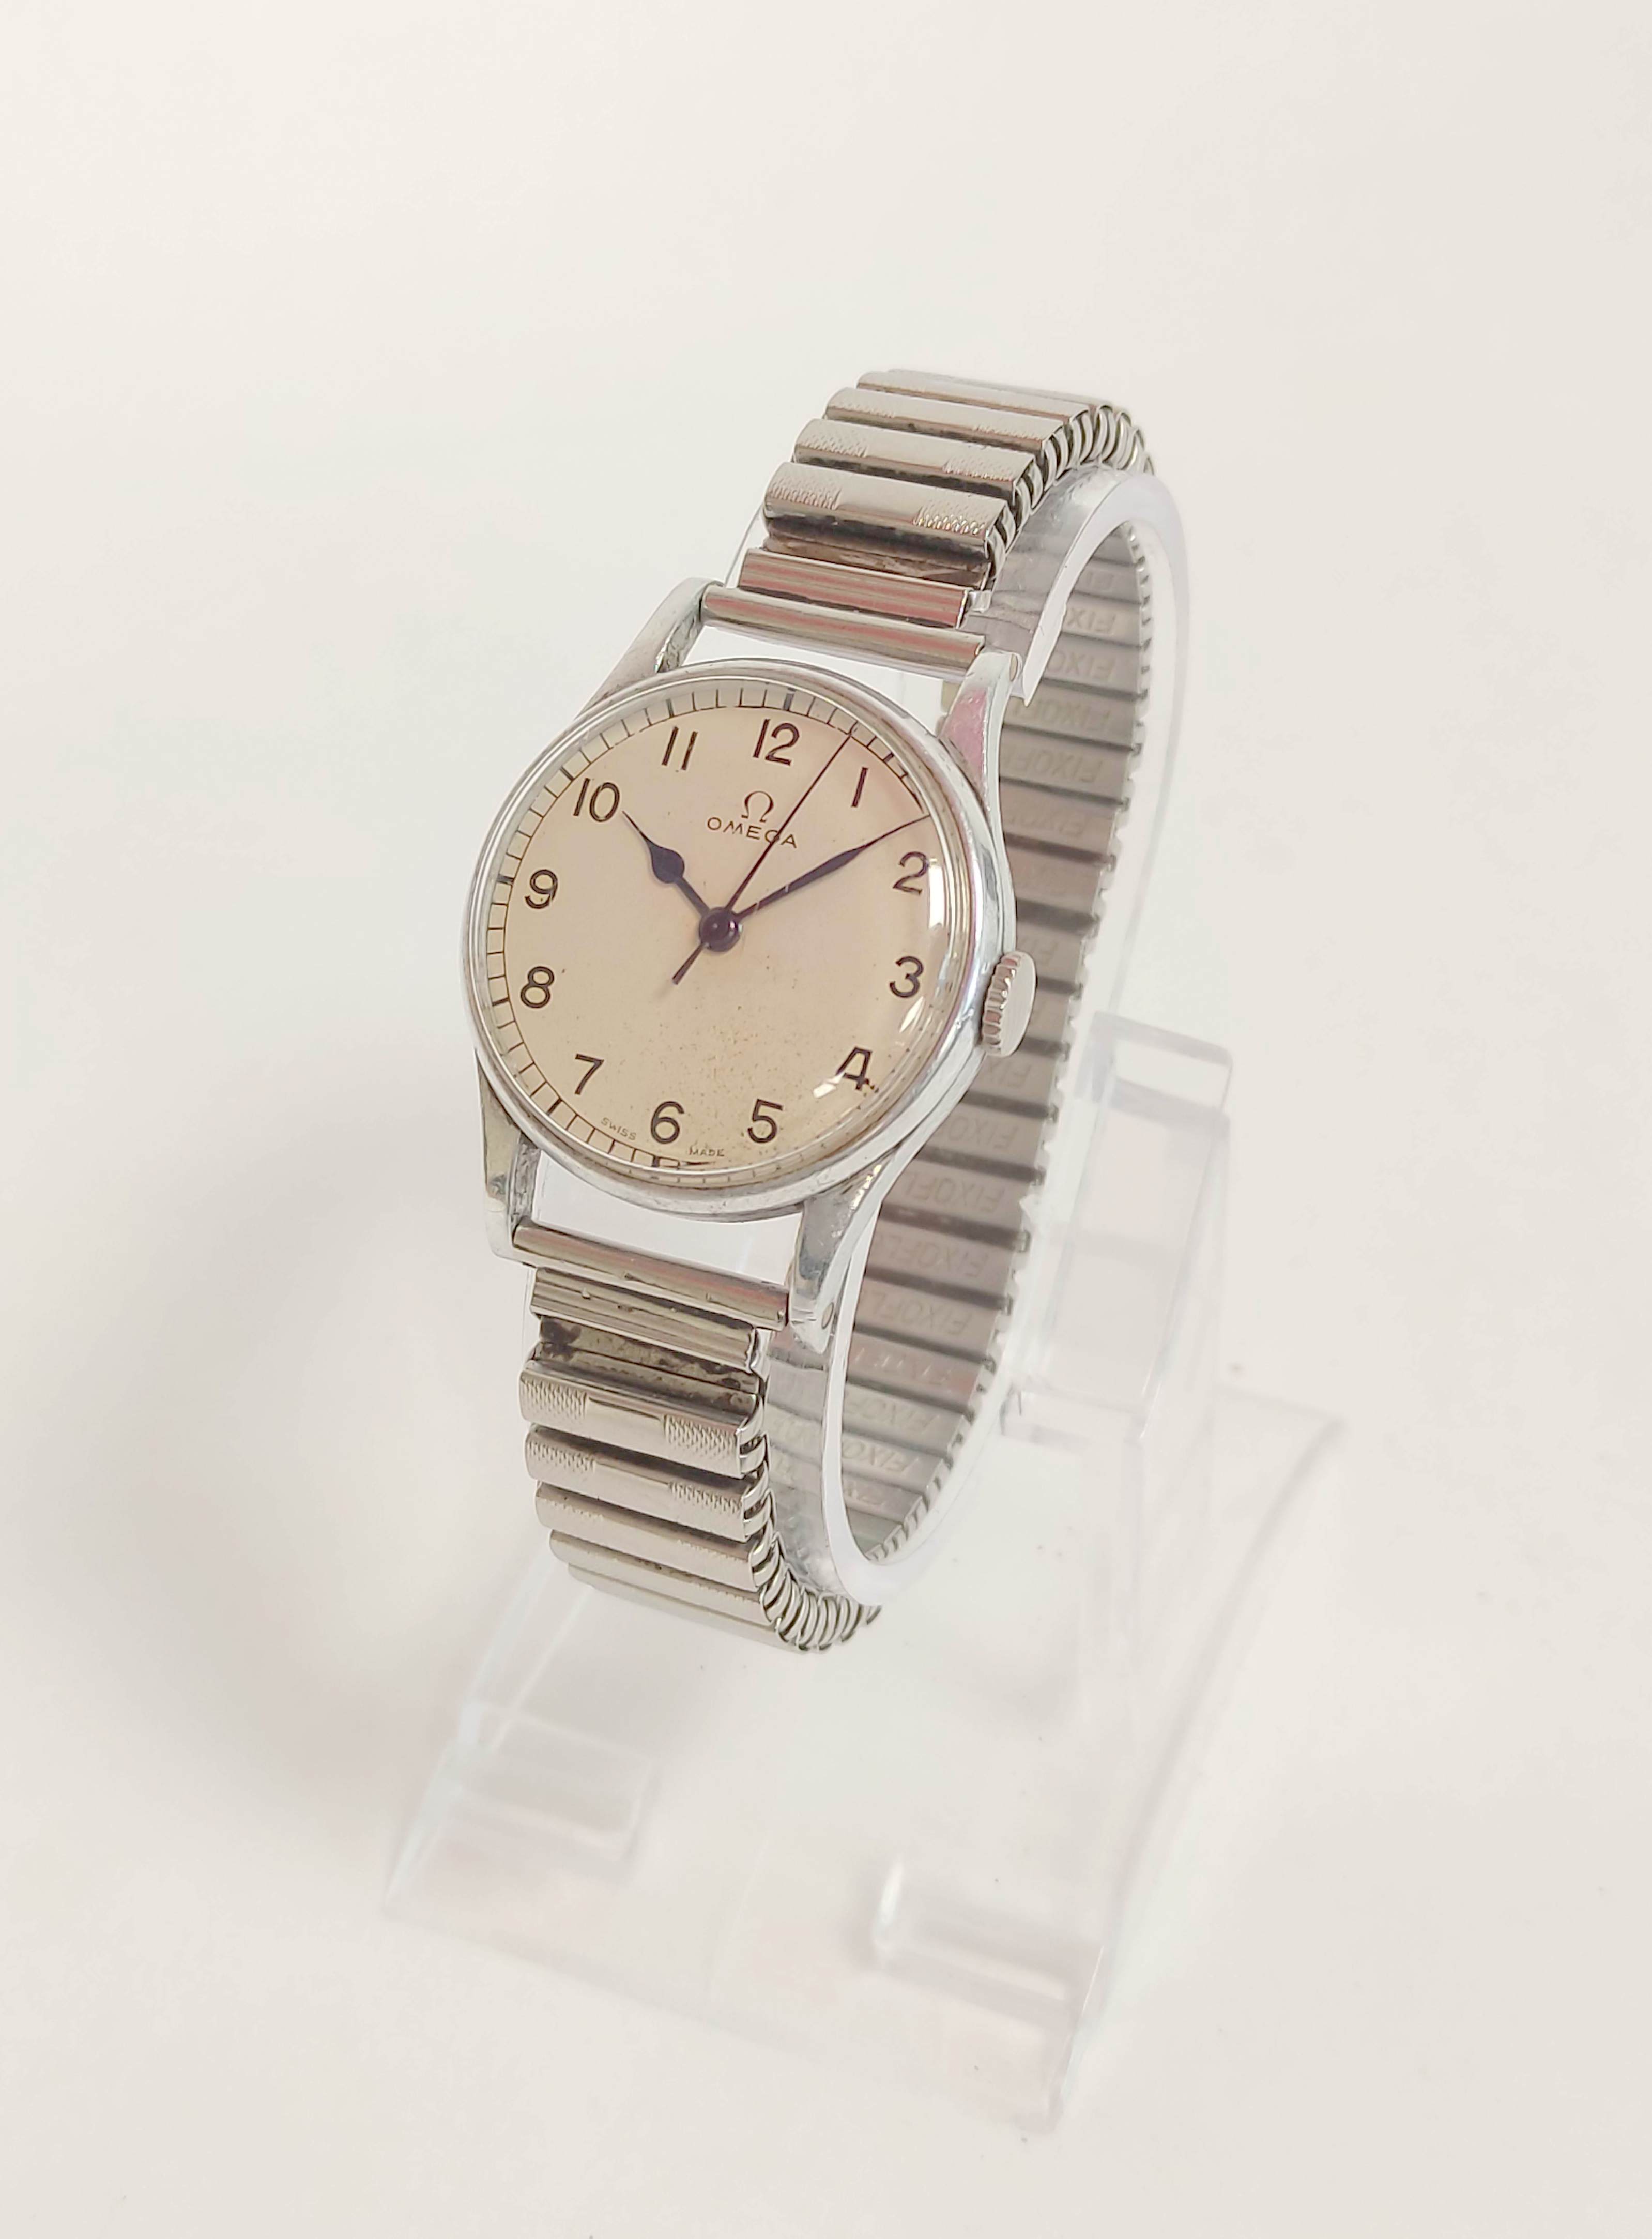 Omega Navigator watch, calibre 30T25C, No 9862181, 6B159 on bracelet case 2292,  1943.